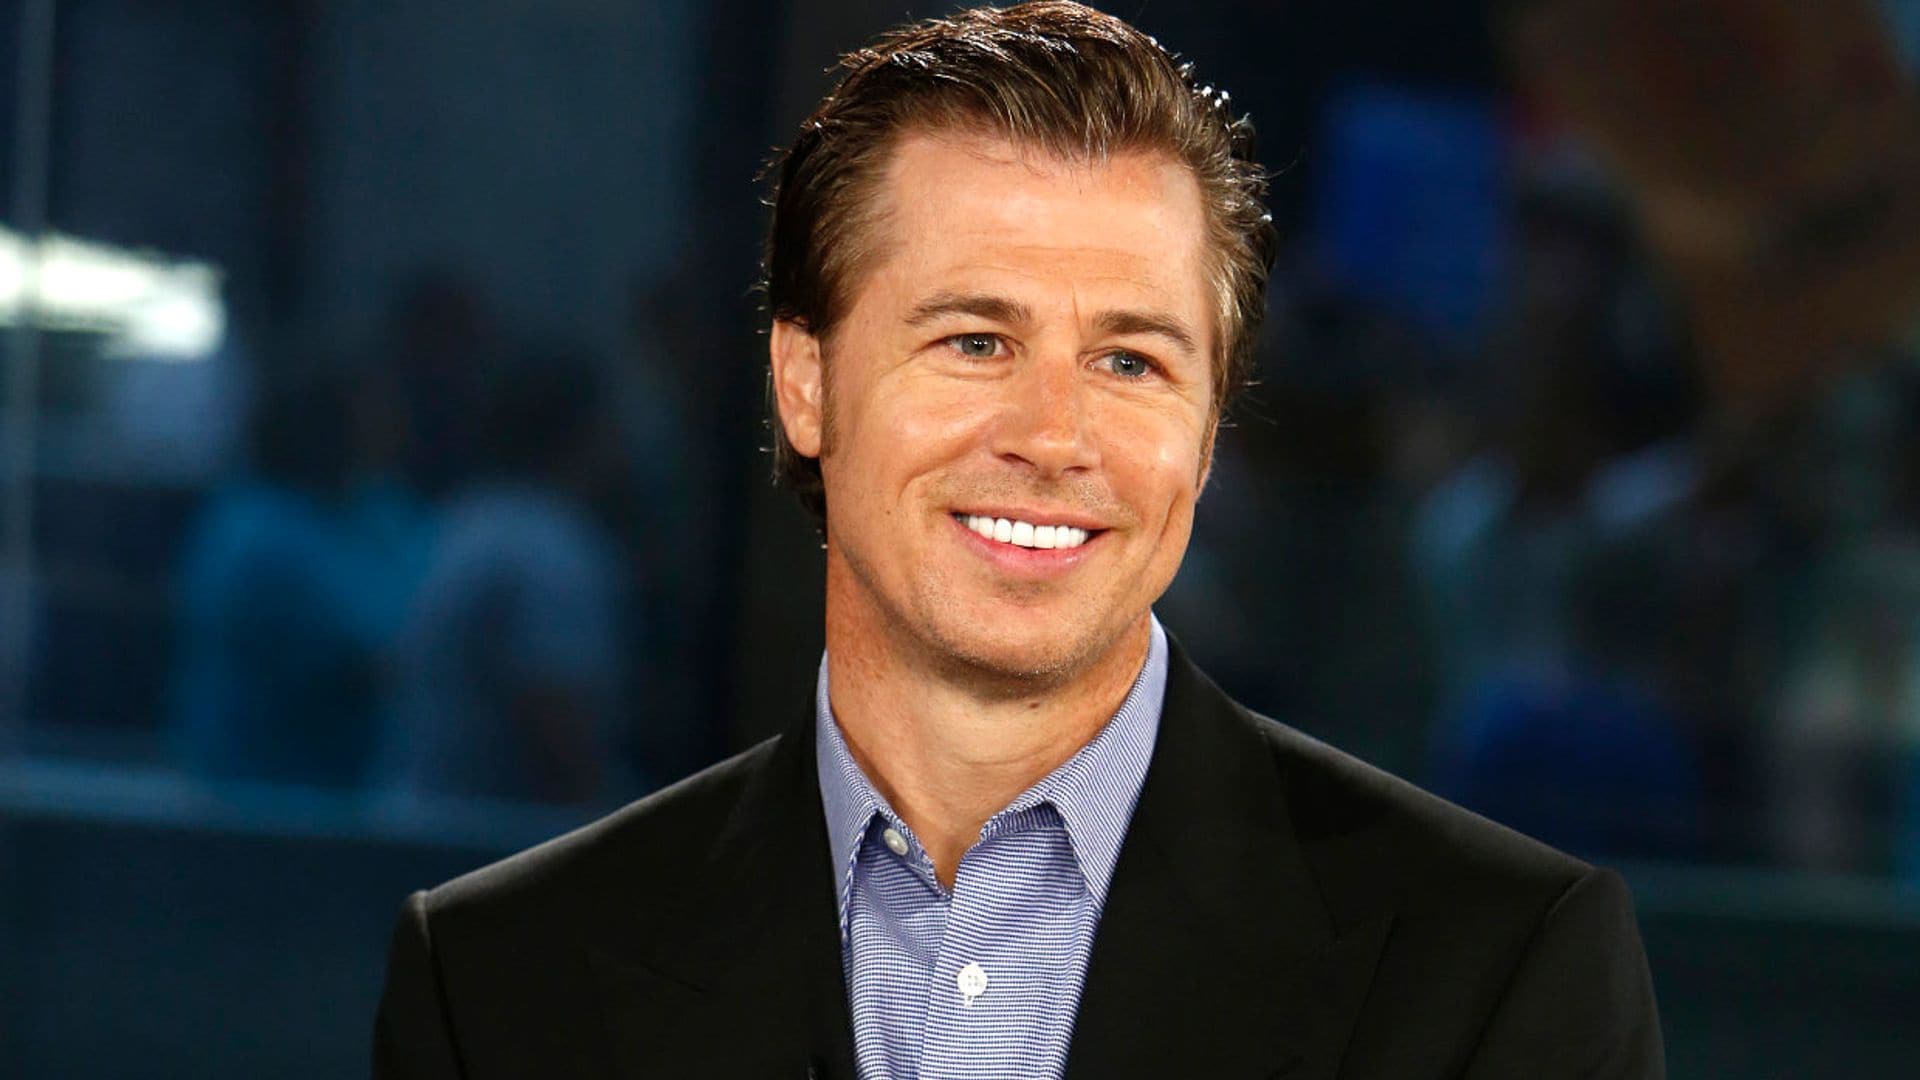 Así es el hermano pequeño de Brad Pitt: empresario multimillonario, filántropo e igual de atractivo que él